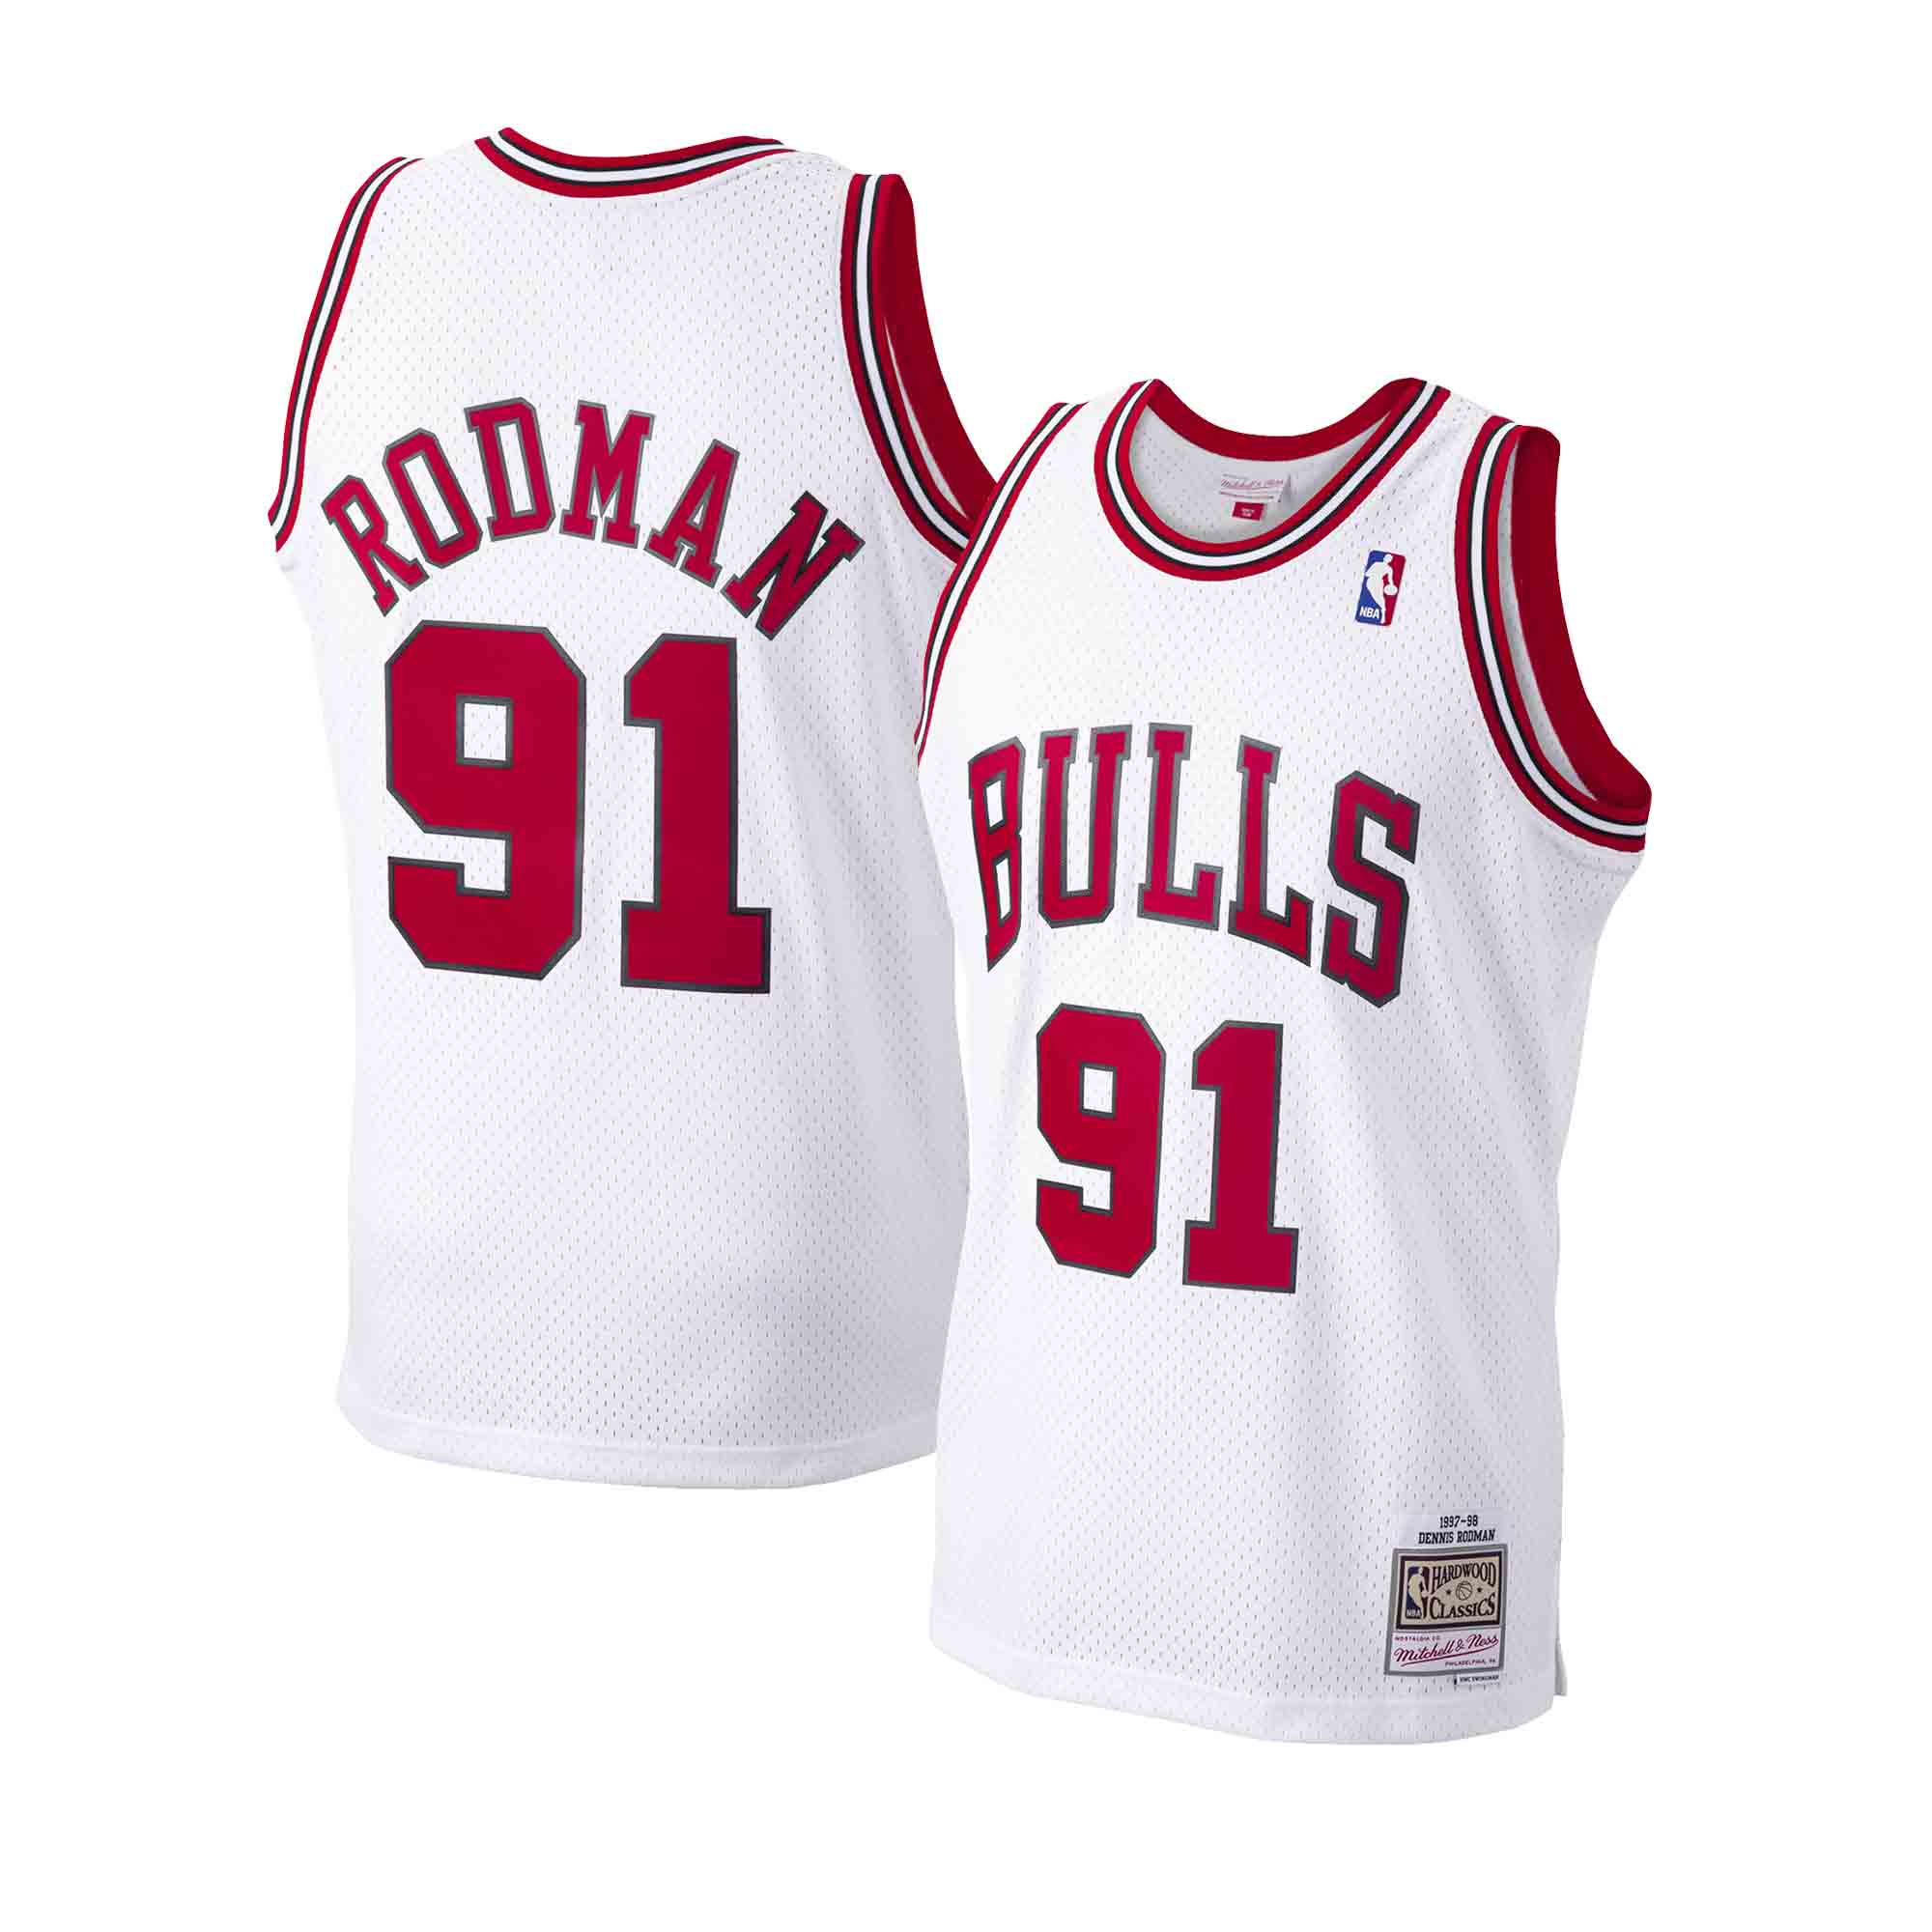 Dennis Rodman Jerseys, Dennis Rodman Shirts, Basketball Apparel, Dennis  Rodman Gear